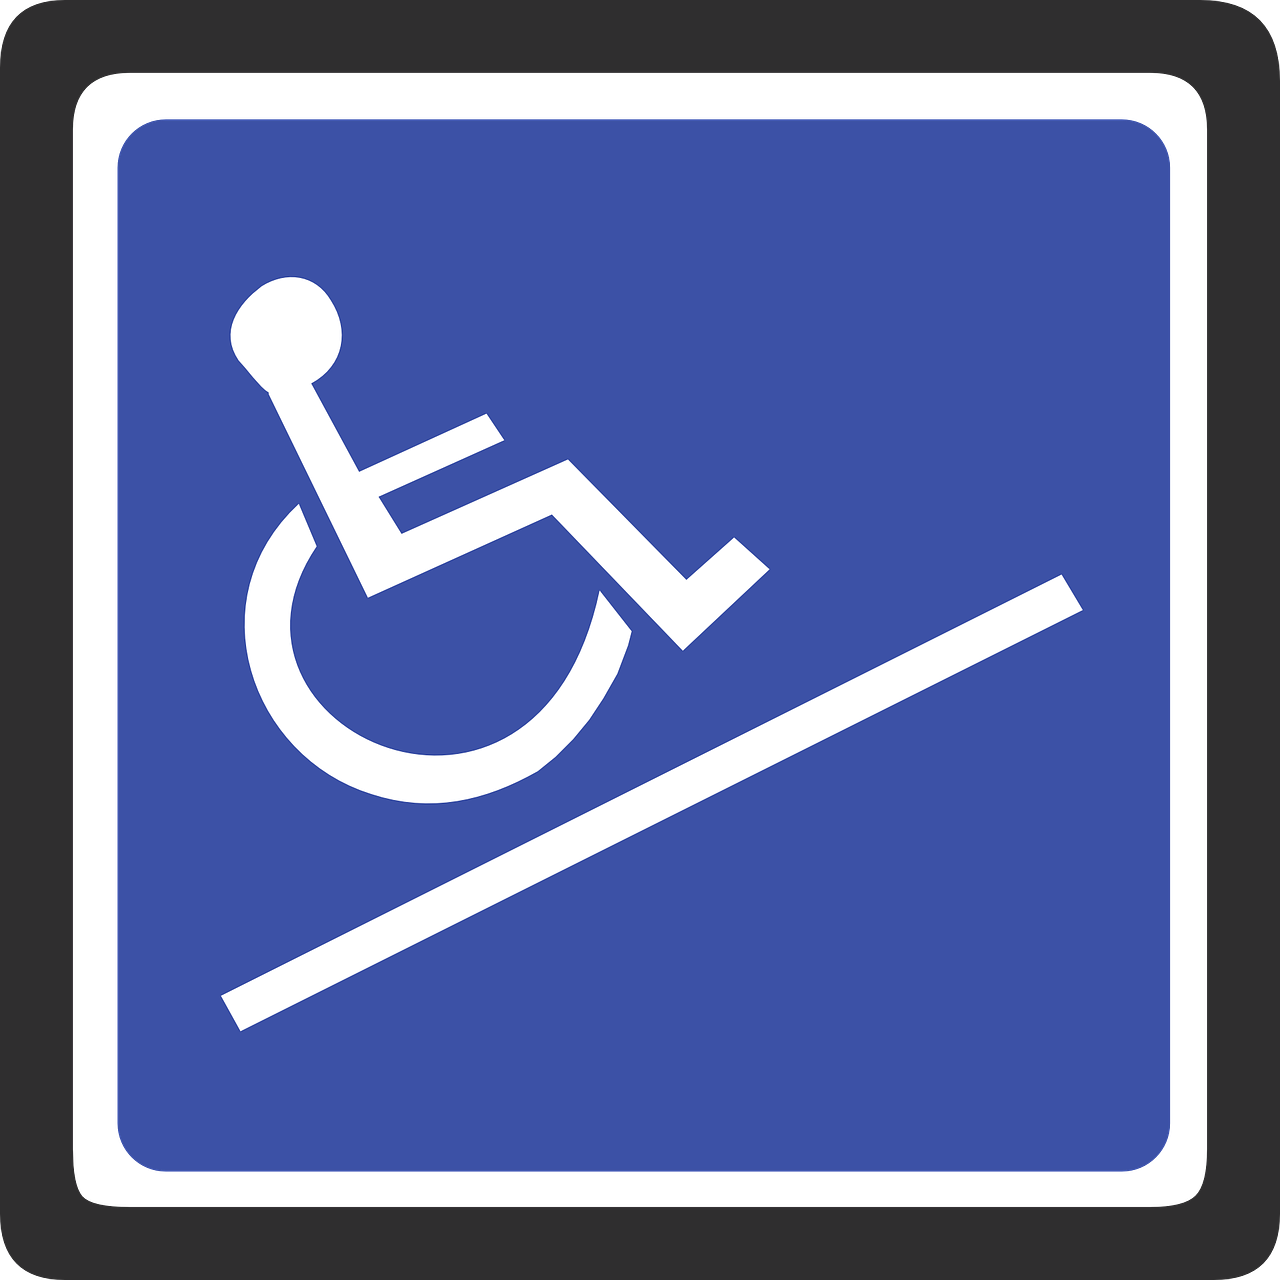 Hoekmaat De Werk- en Activiteitencentr Gemiva-SVG Grp instelling gehandicaptenzorg verstandelijk gehandicapten ervaringen